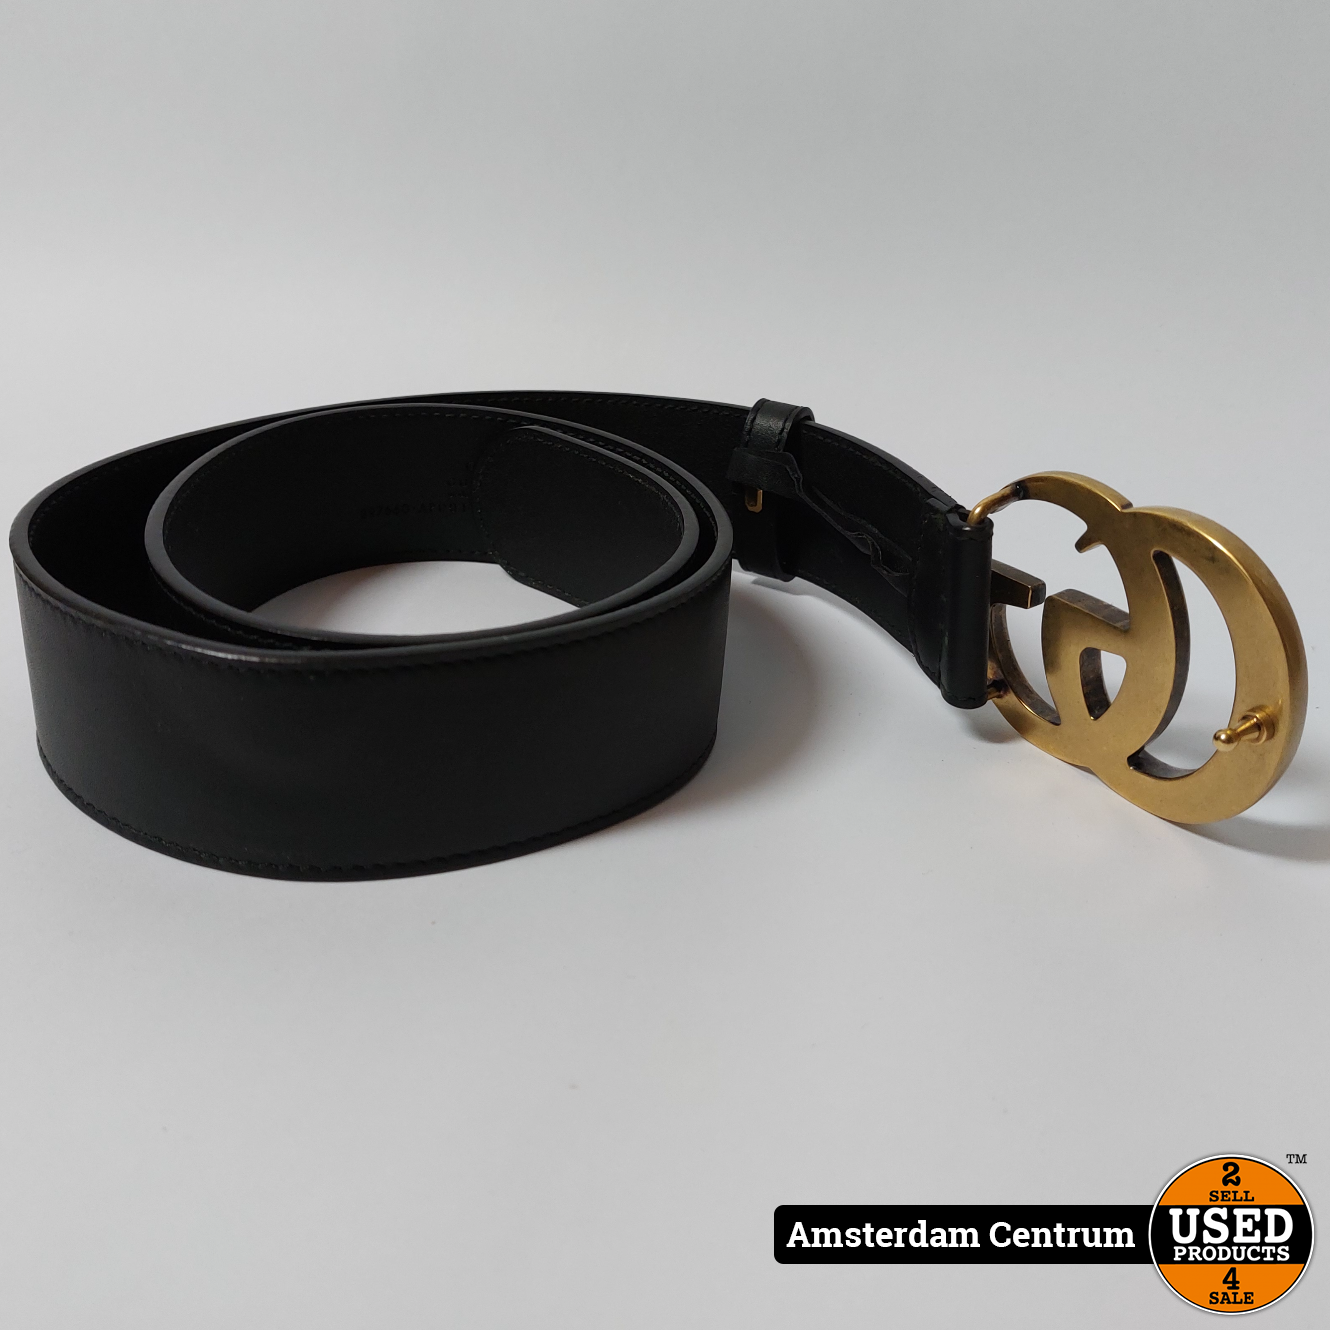 Zoek machine optimalisatie marathon tijdschrift Gucci Re-Edition wide leather belt - Used Products Amsterdam Centrum